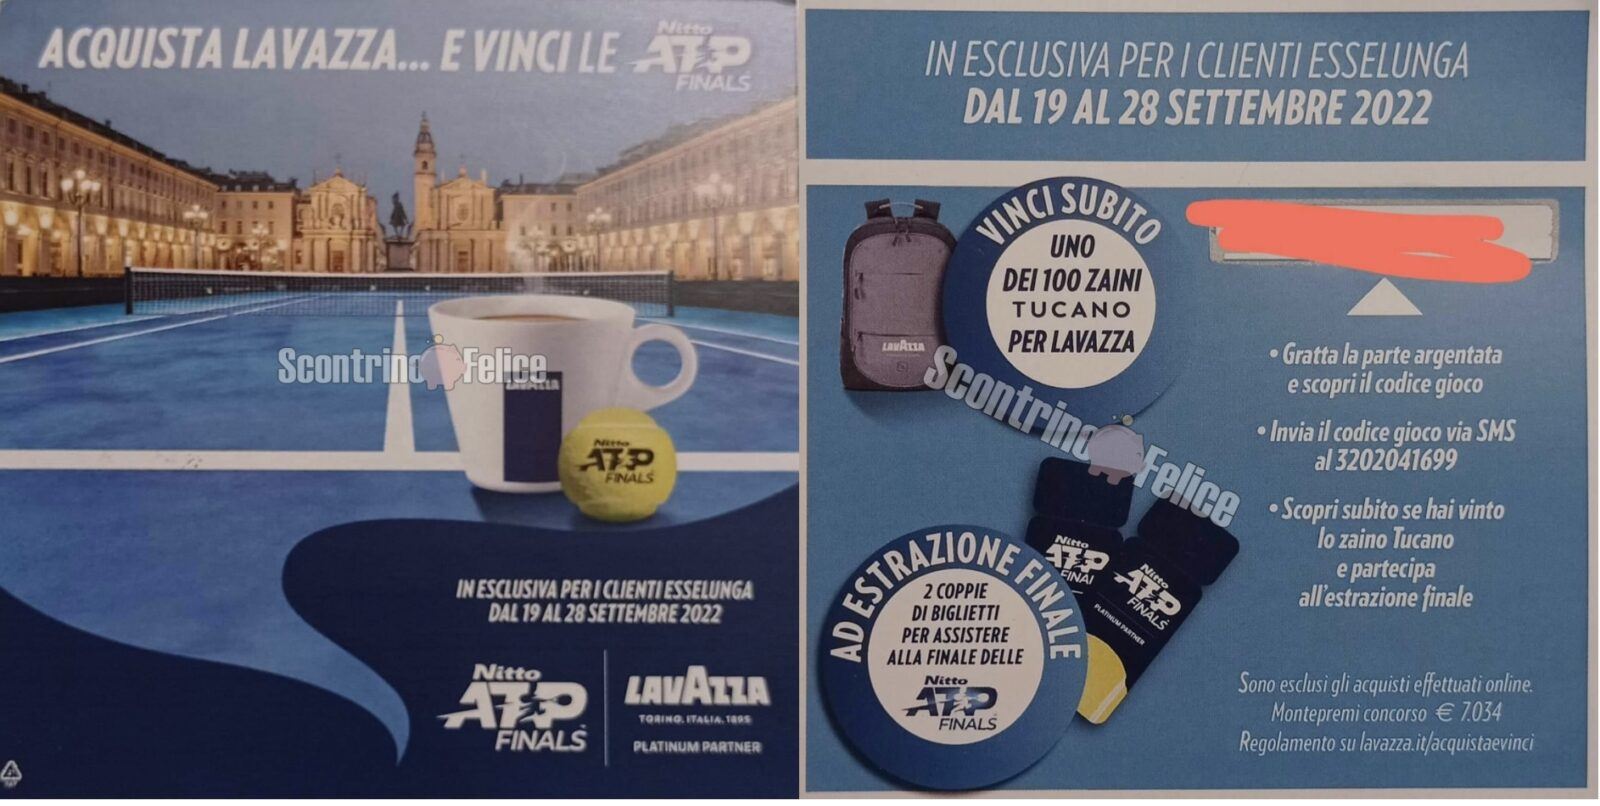 Concorso Lavazza da Esselunga: vinci 100 zaino Tucano e la finale delle Nitto ATP Finals 2022 4